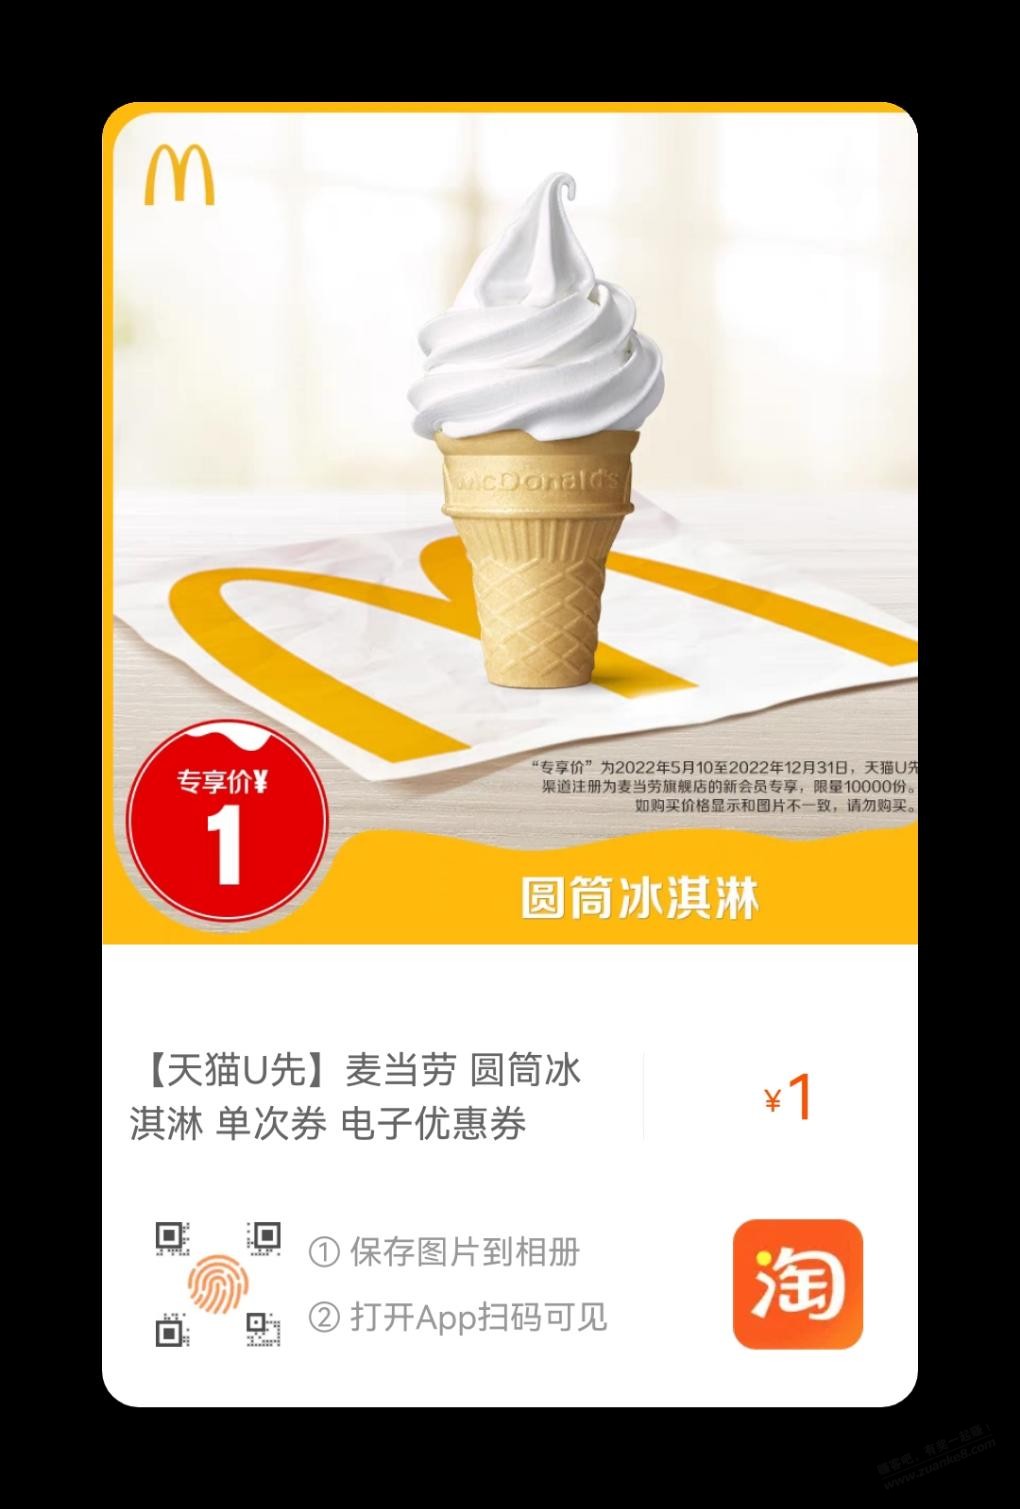 冰淇淋-当地气温高的可以看看-惠小助(52huixz.com)